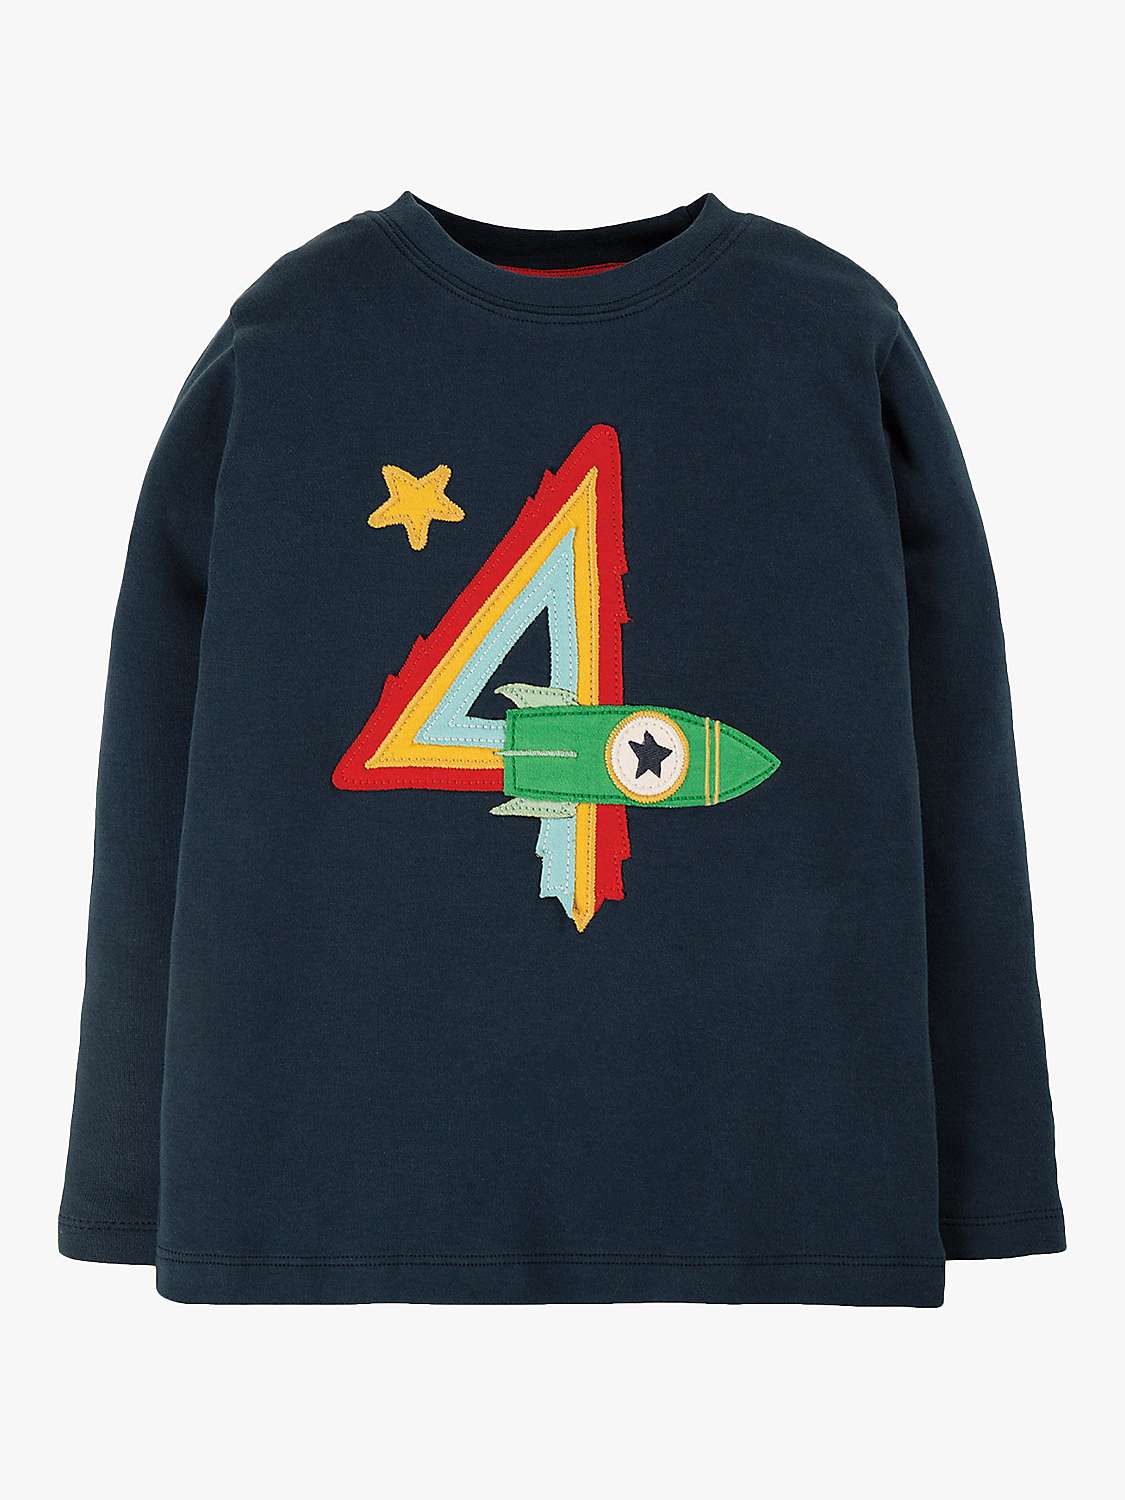 Buy Frugi Kids' Magic Number 4 Organic Cotton Rocket T-shirt, Indigo/Multi Online at johnlewis.com